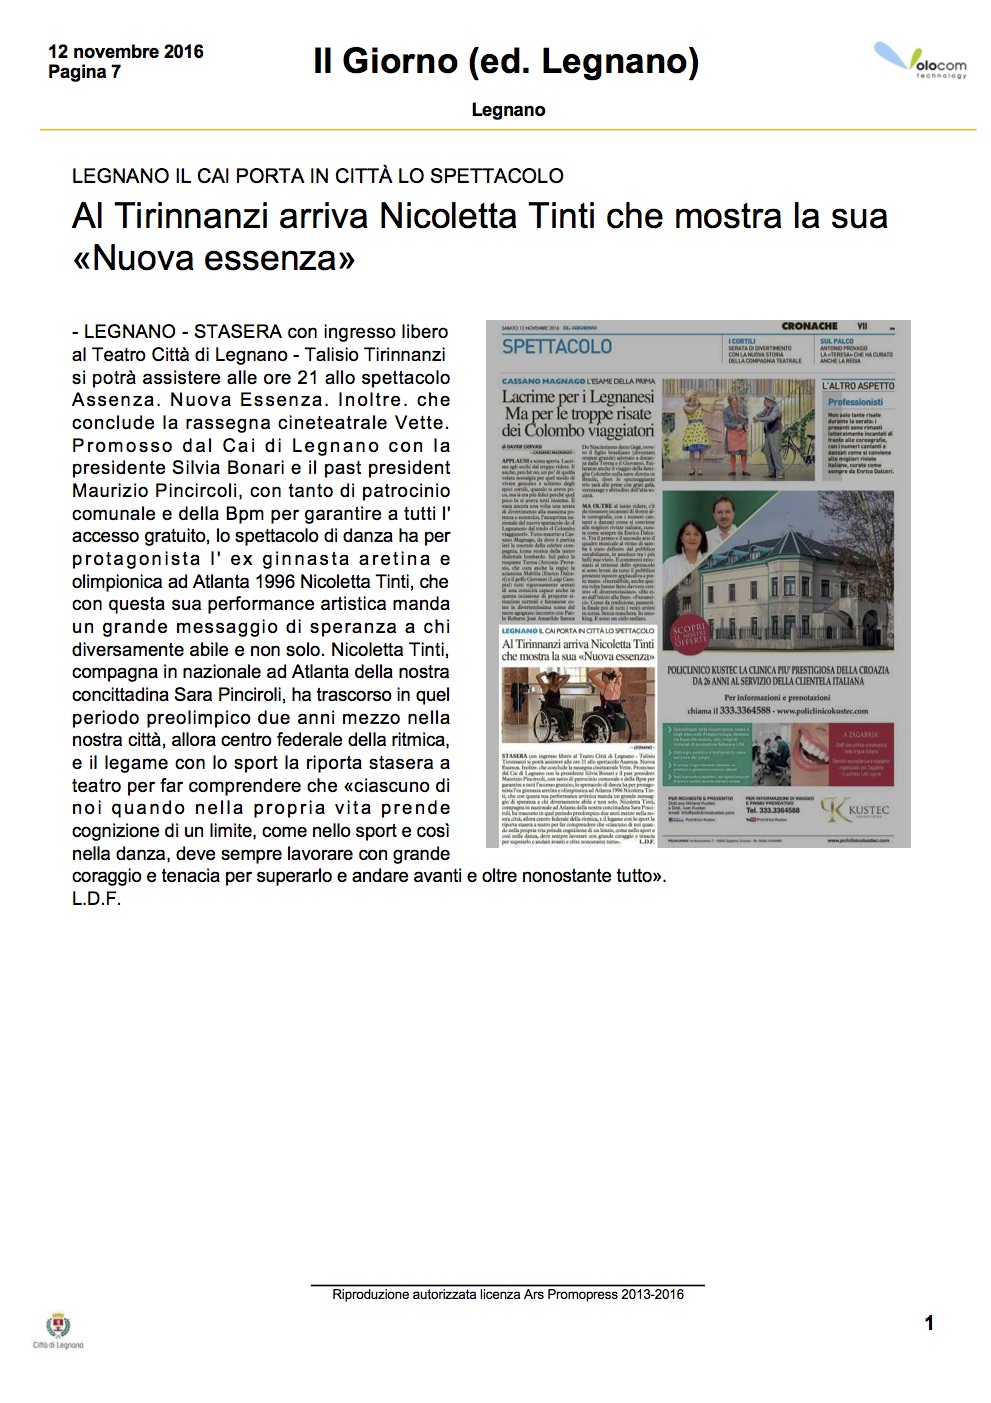 nicoletta tinti silvia bertoluzza su Quotidiano Il Giorno (ed. Legnano) del 12 novembre 2016